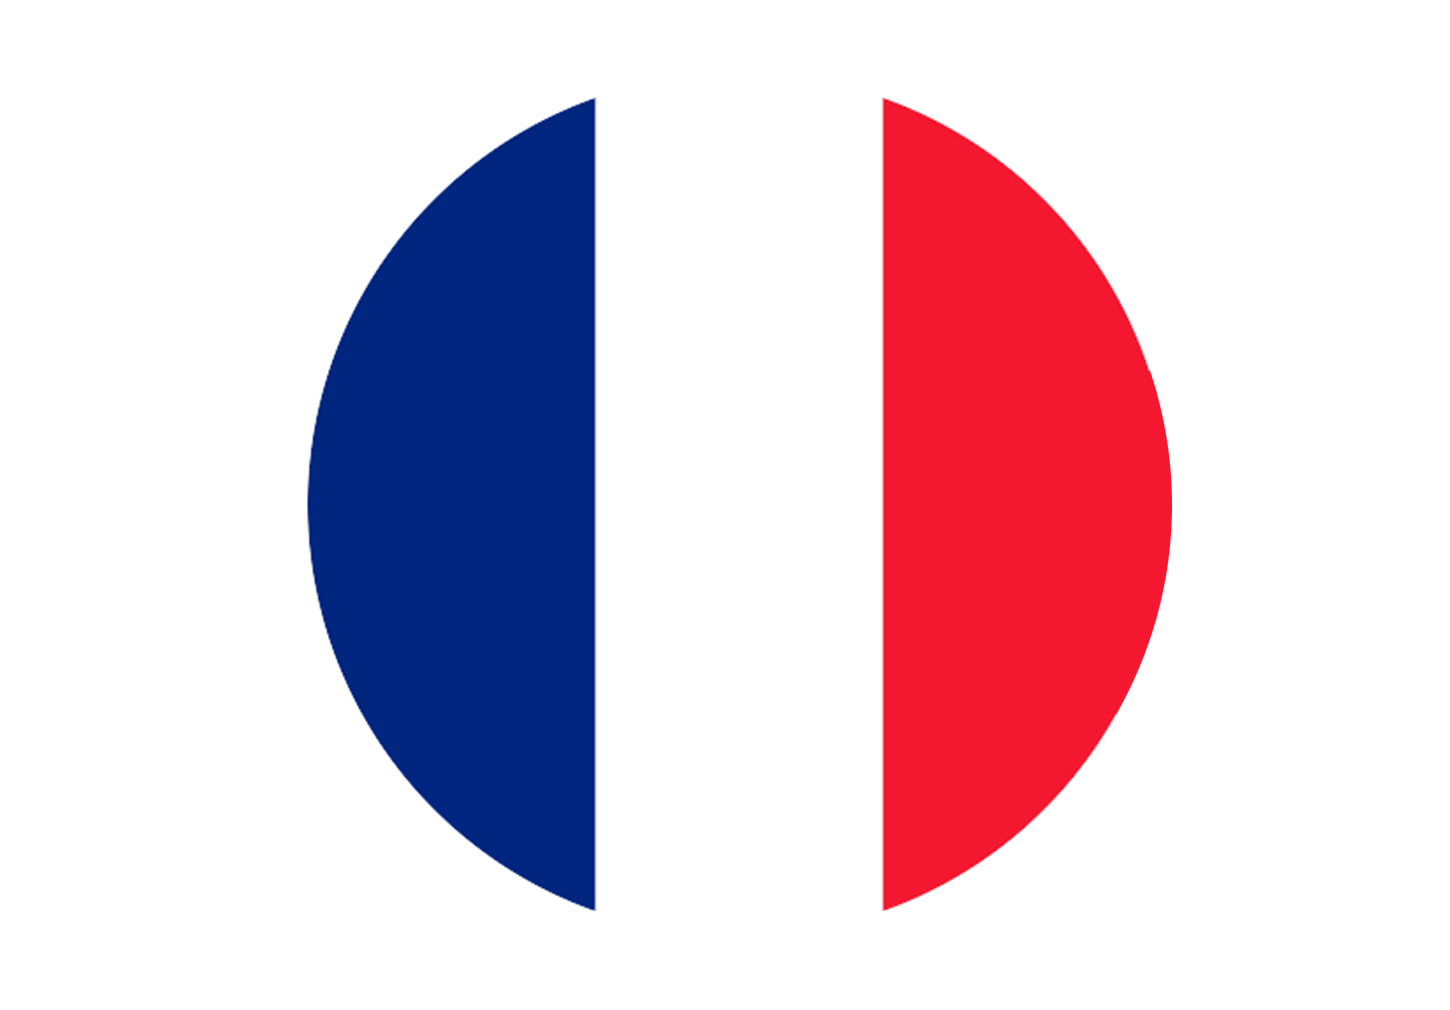 Французский язык для детей